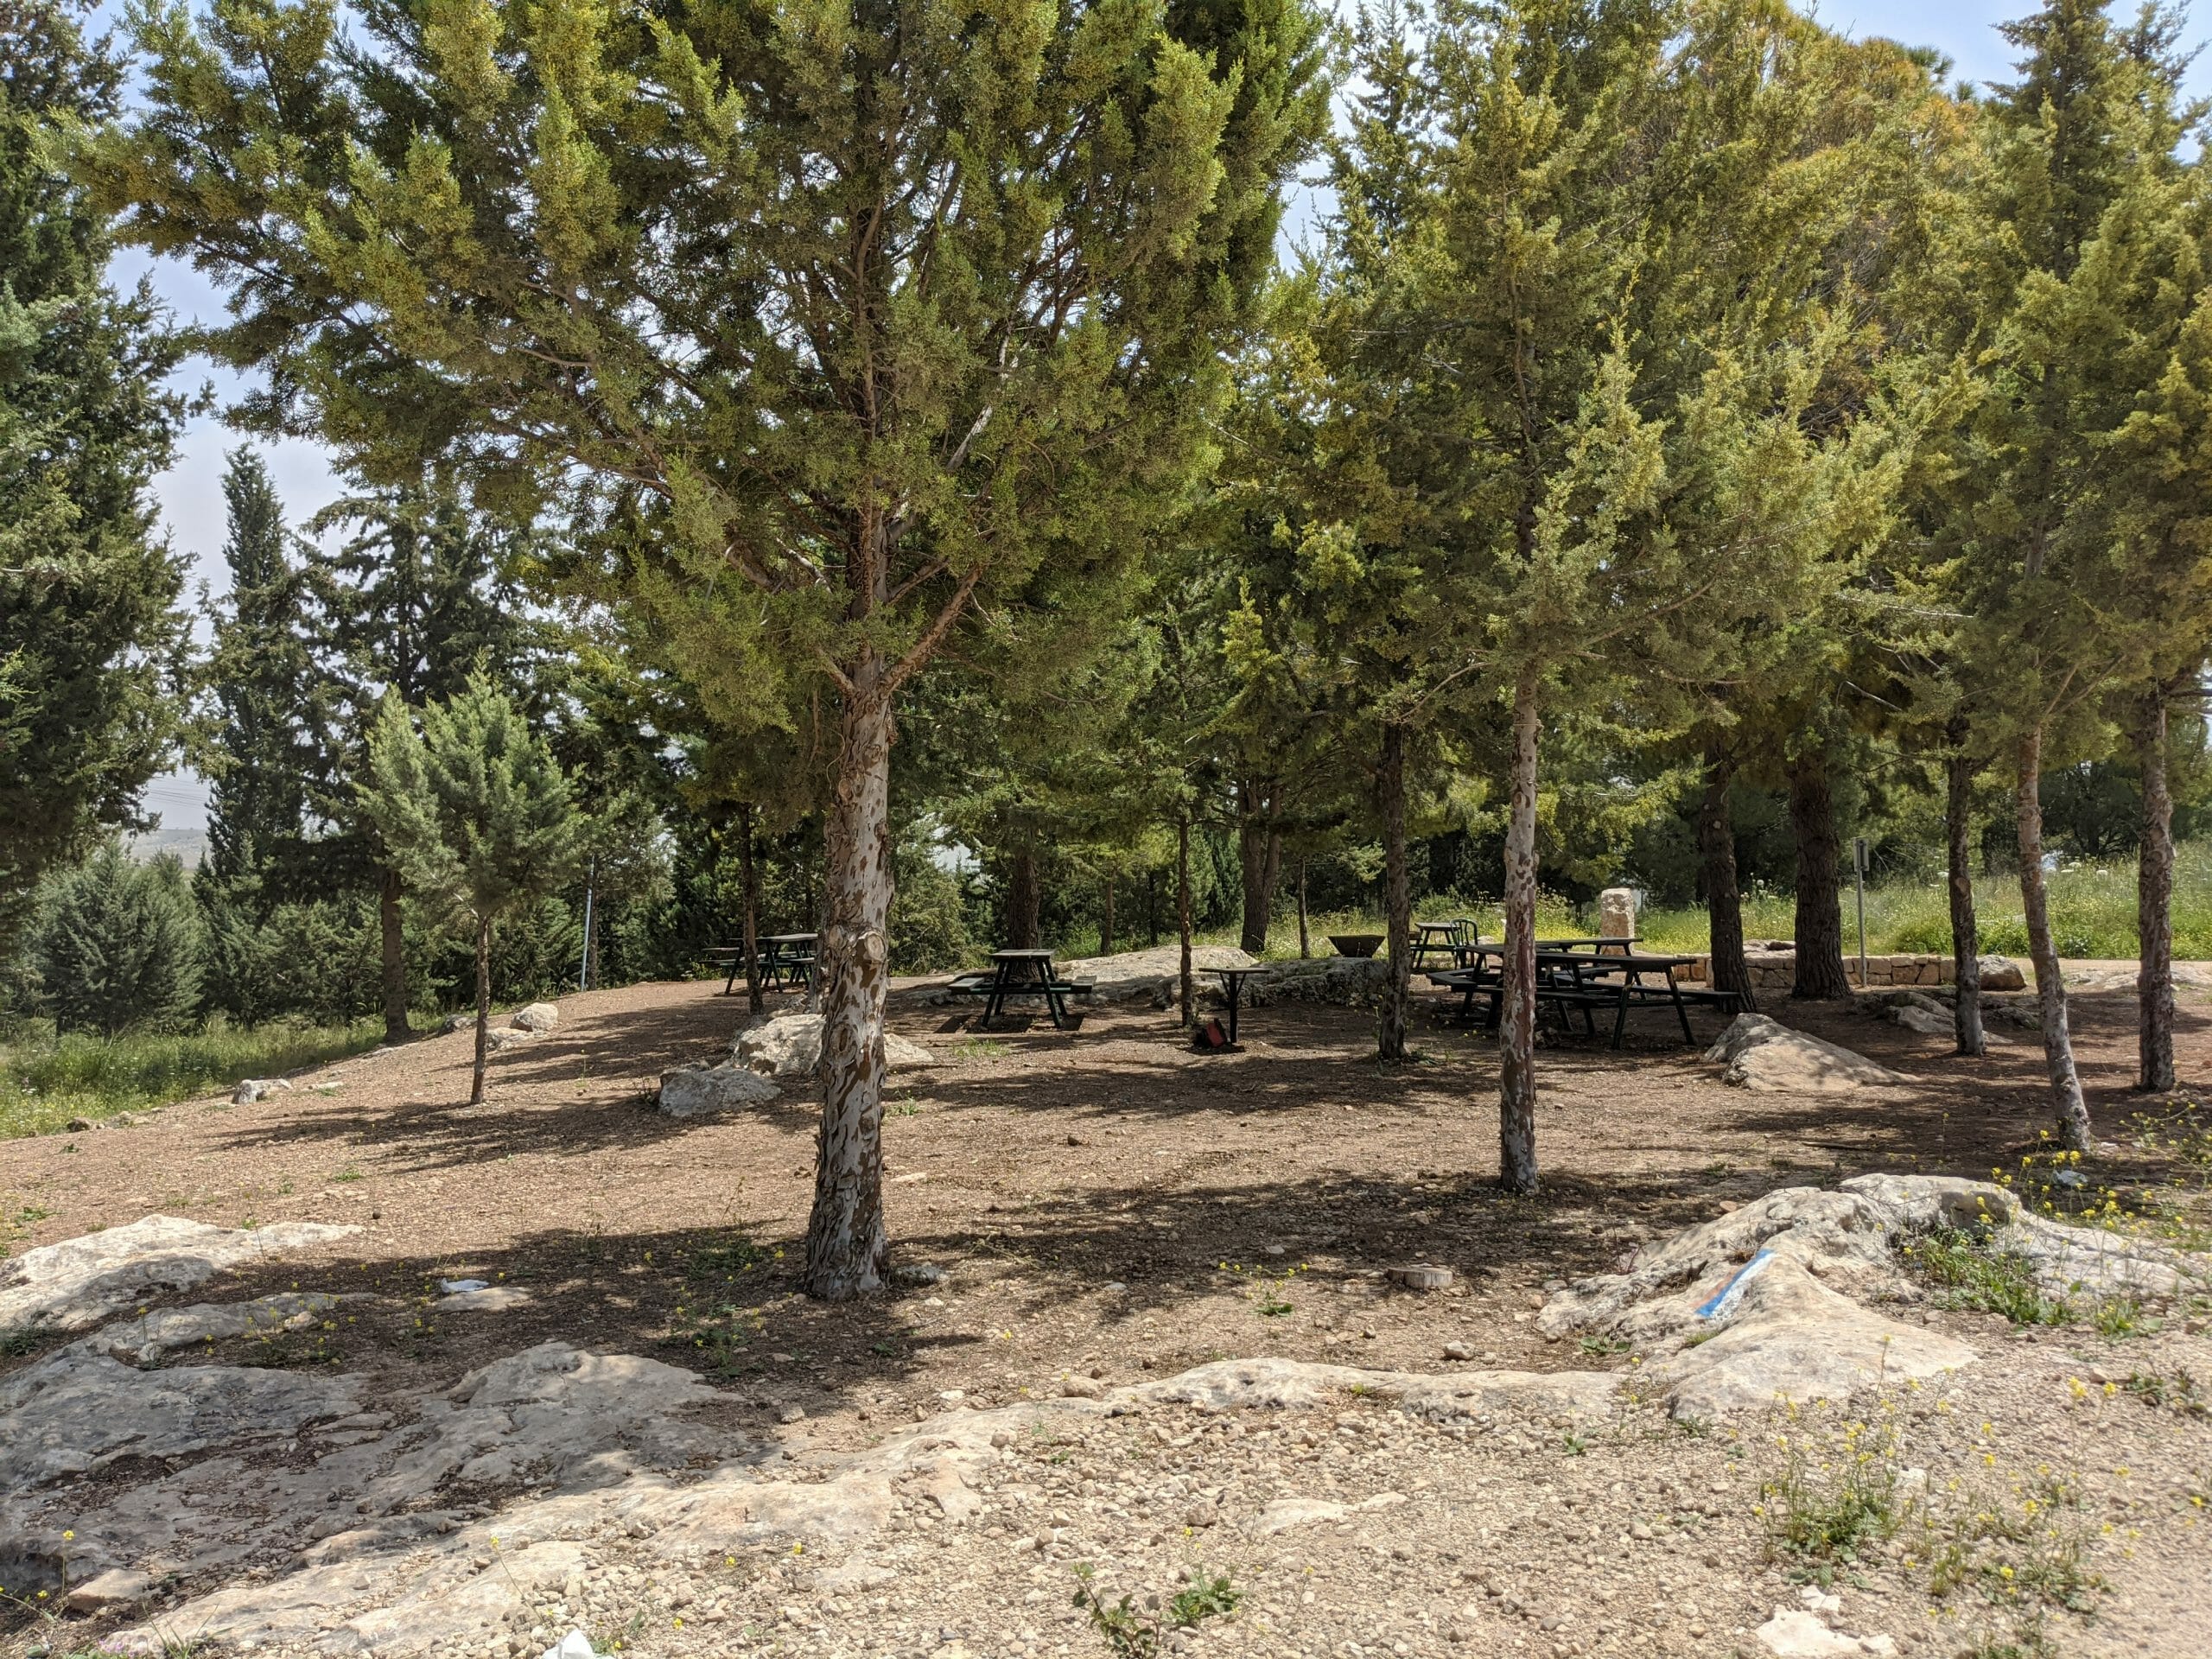 פארק יער שוהם, חניון שולחנות ושביל ישראל, צילום: ד"ר ענת אביטל